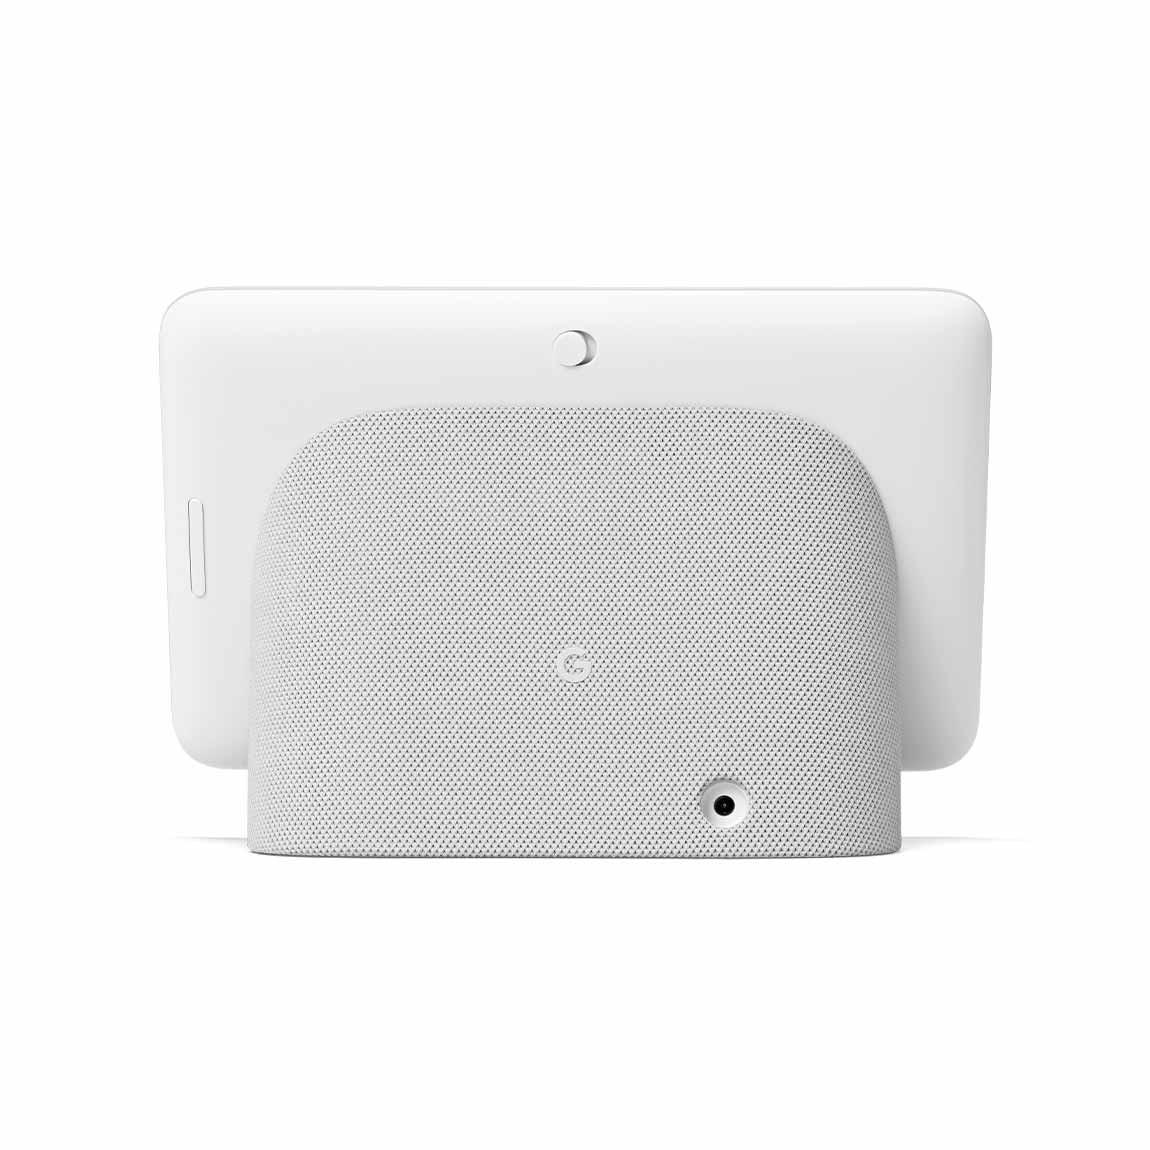 Google Nest Hub 2er-Pack - Smart Display mit Sprachsteuerung - von hinten